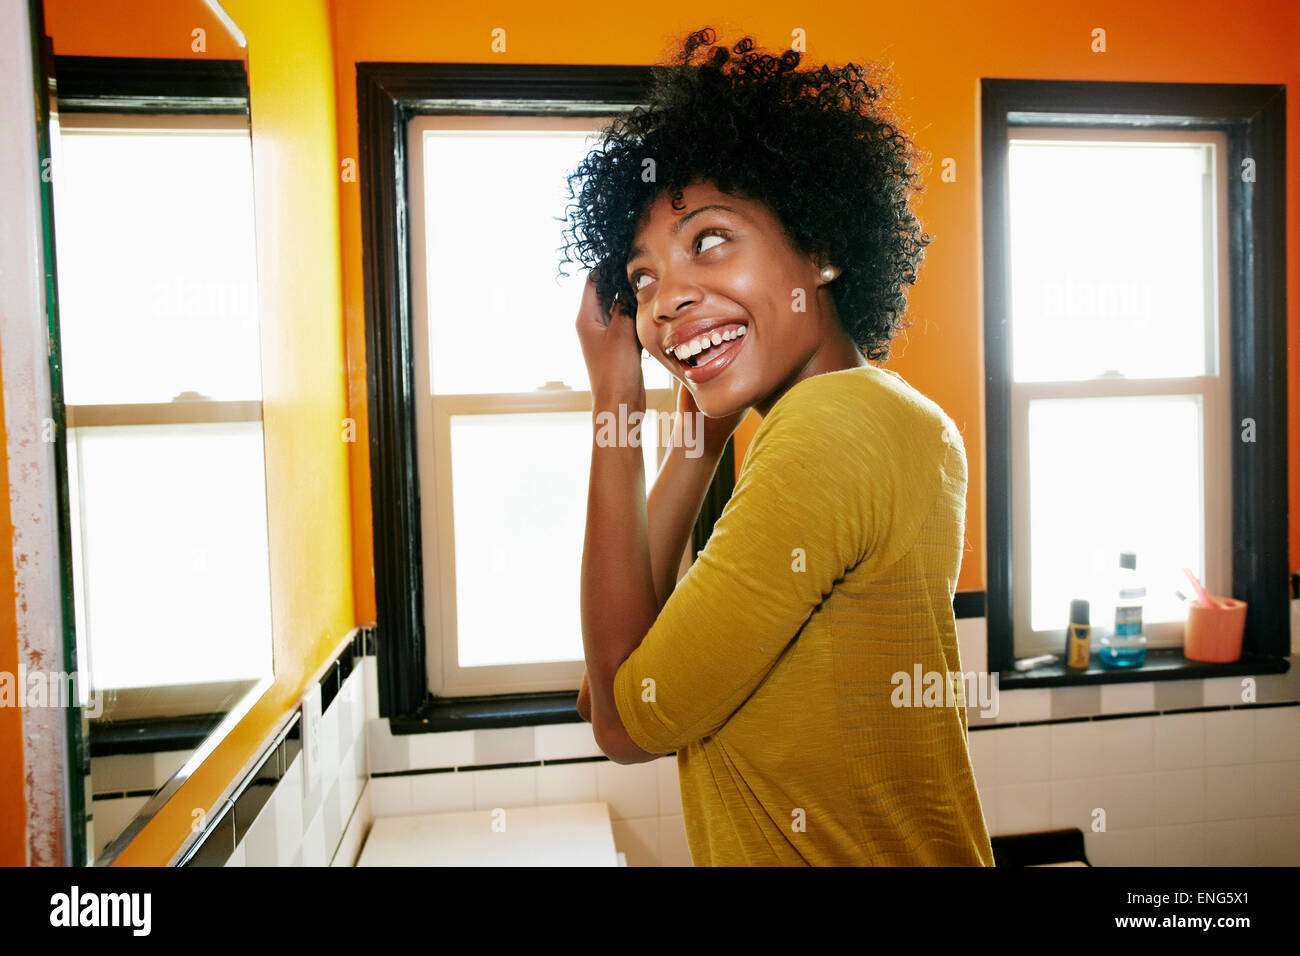 Smiling black woman mise en miroir de salle de bains Banque D'Images